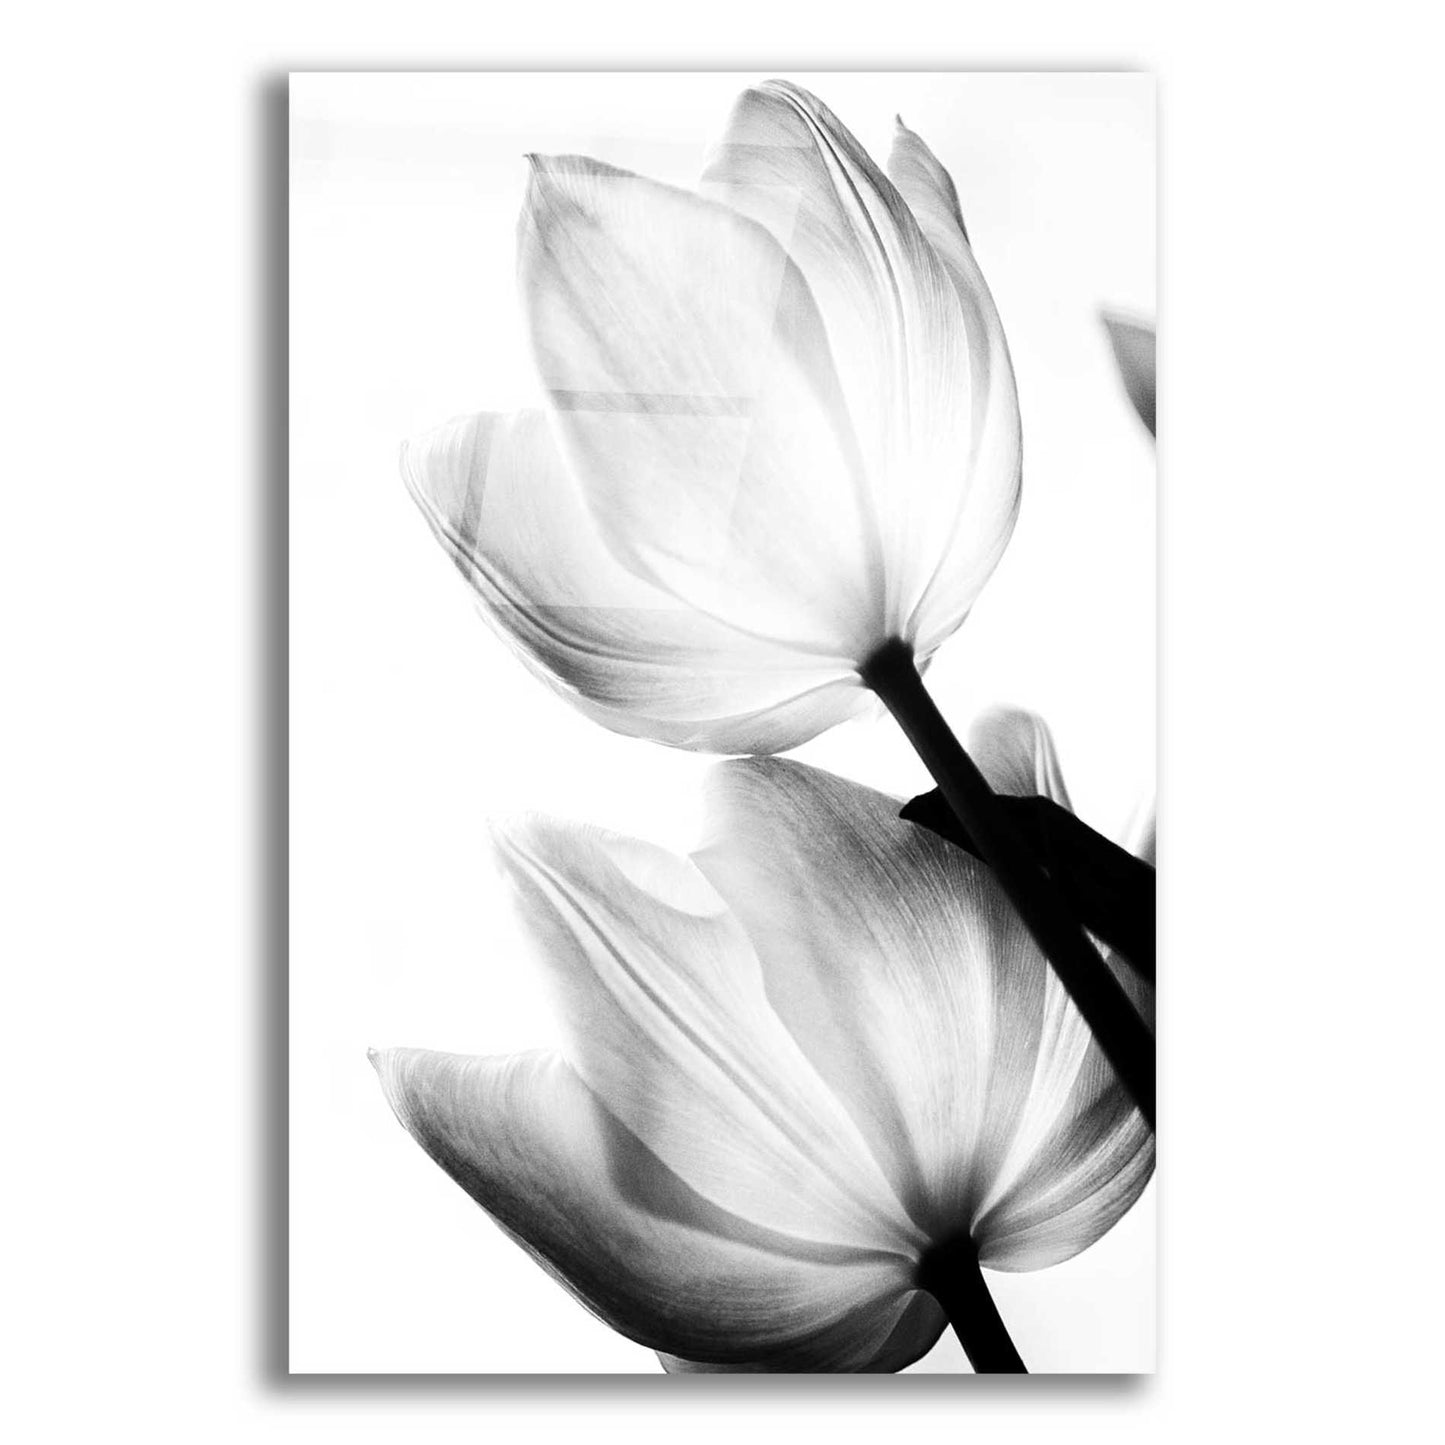 Epic Art 'Translucent Tulips II' by Debra Van Swearingen, Acrylic Glass Wall Art,12x16x1.1x0,18x26x1.1x0,26x34x1.74x0,40x54x1.74x0